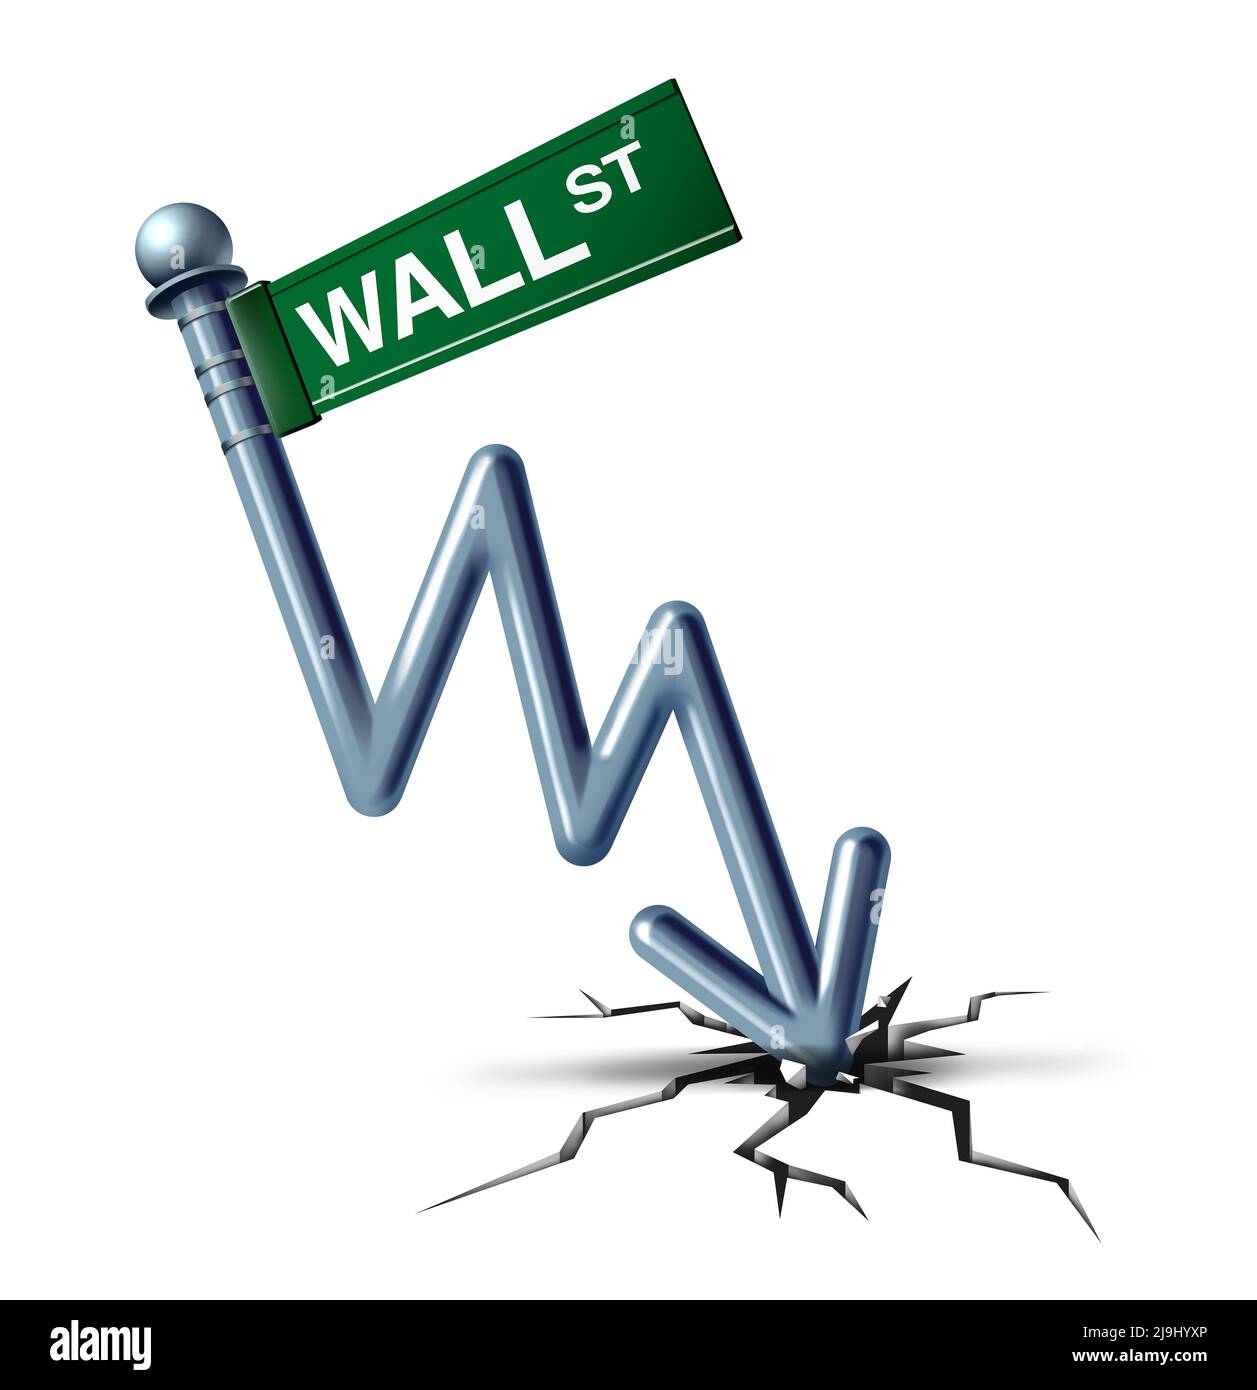 Wall Street crisi e crollo economico o disastro finanziario e il problema del credito d'affari simbolo come un concetto di declino del mercato azionario. Foto Stock